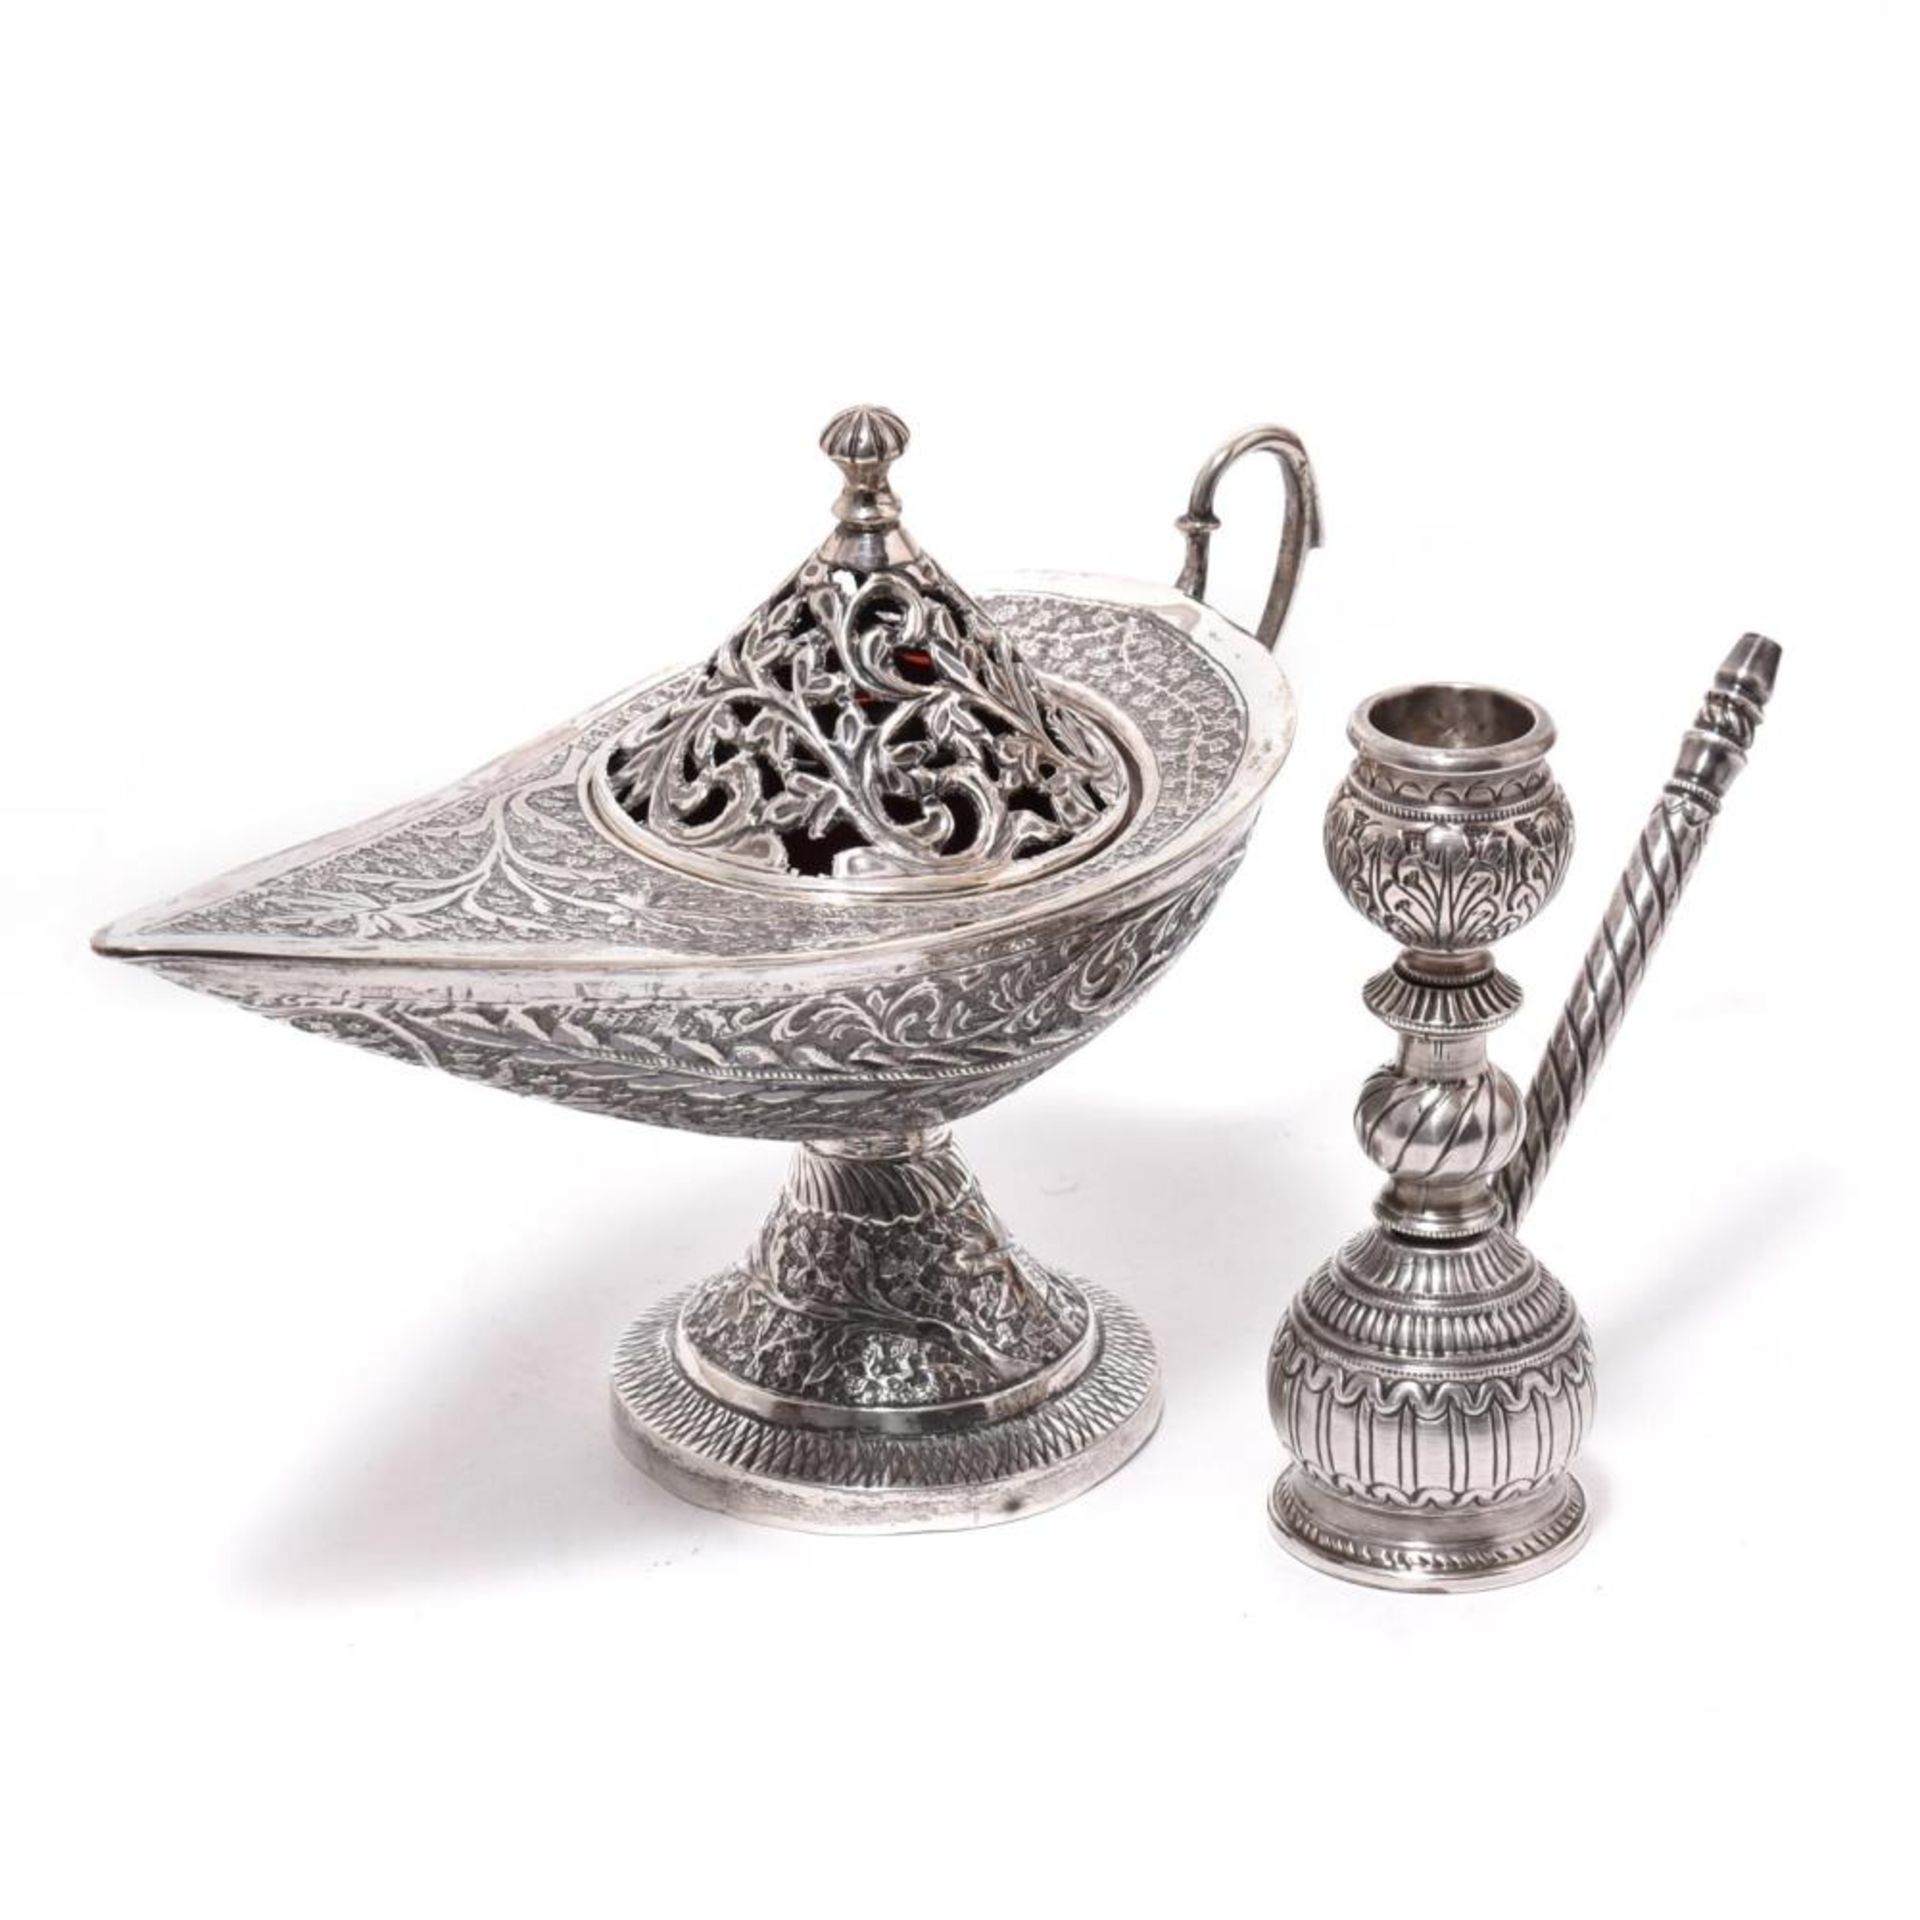 Zwei Teile Silber. Wohl Iran | Silber bzw. Silberauflage über Holzkern.